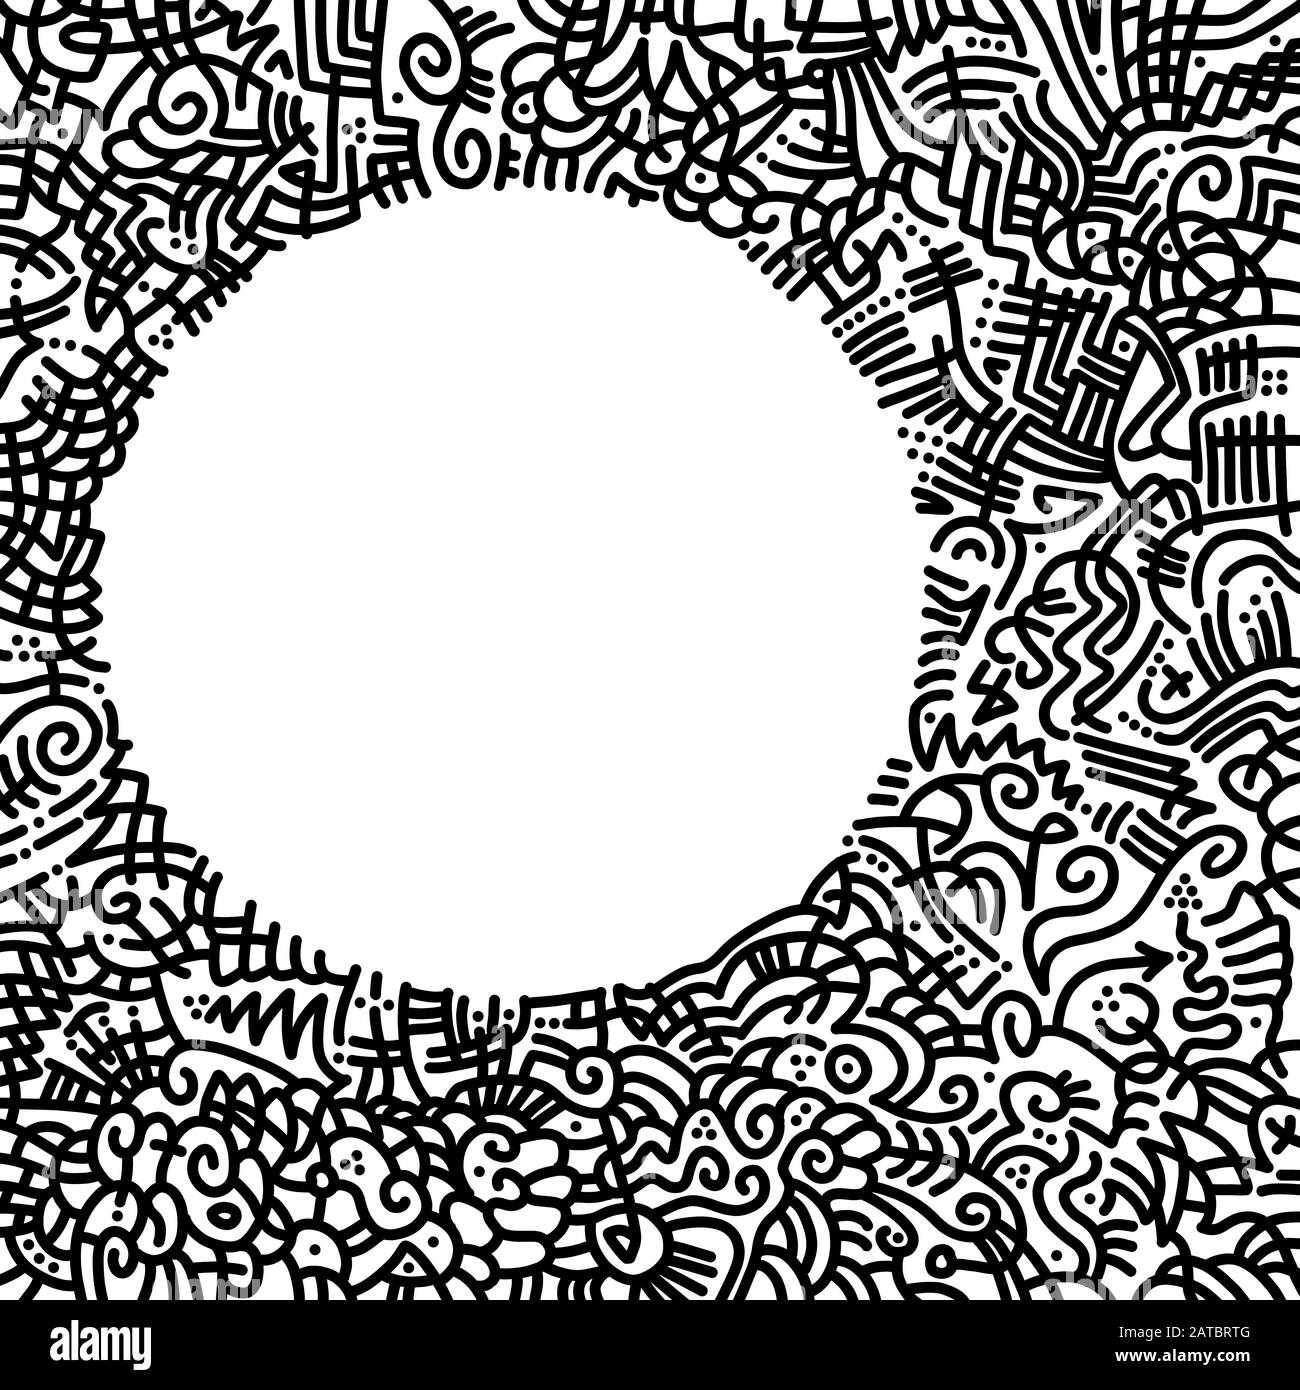 Cornice quadrata disegnata a mano con motivi astratti, fatta di curve nere, linee e punti e uno spazio libero a forma di cerchio bianco. Foto Stock